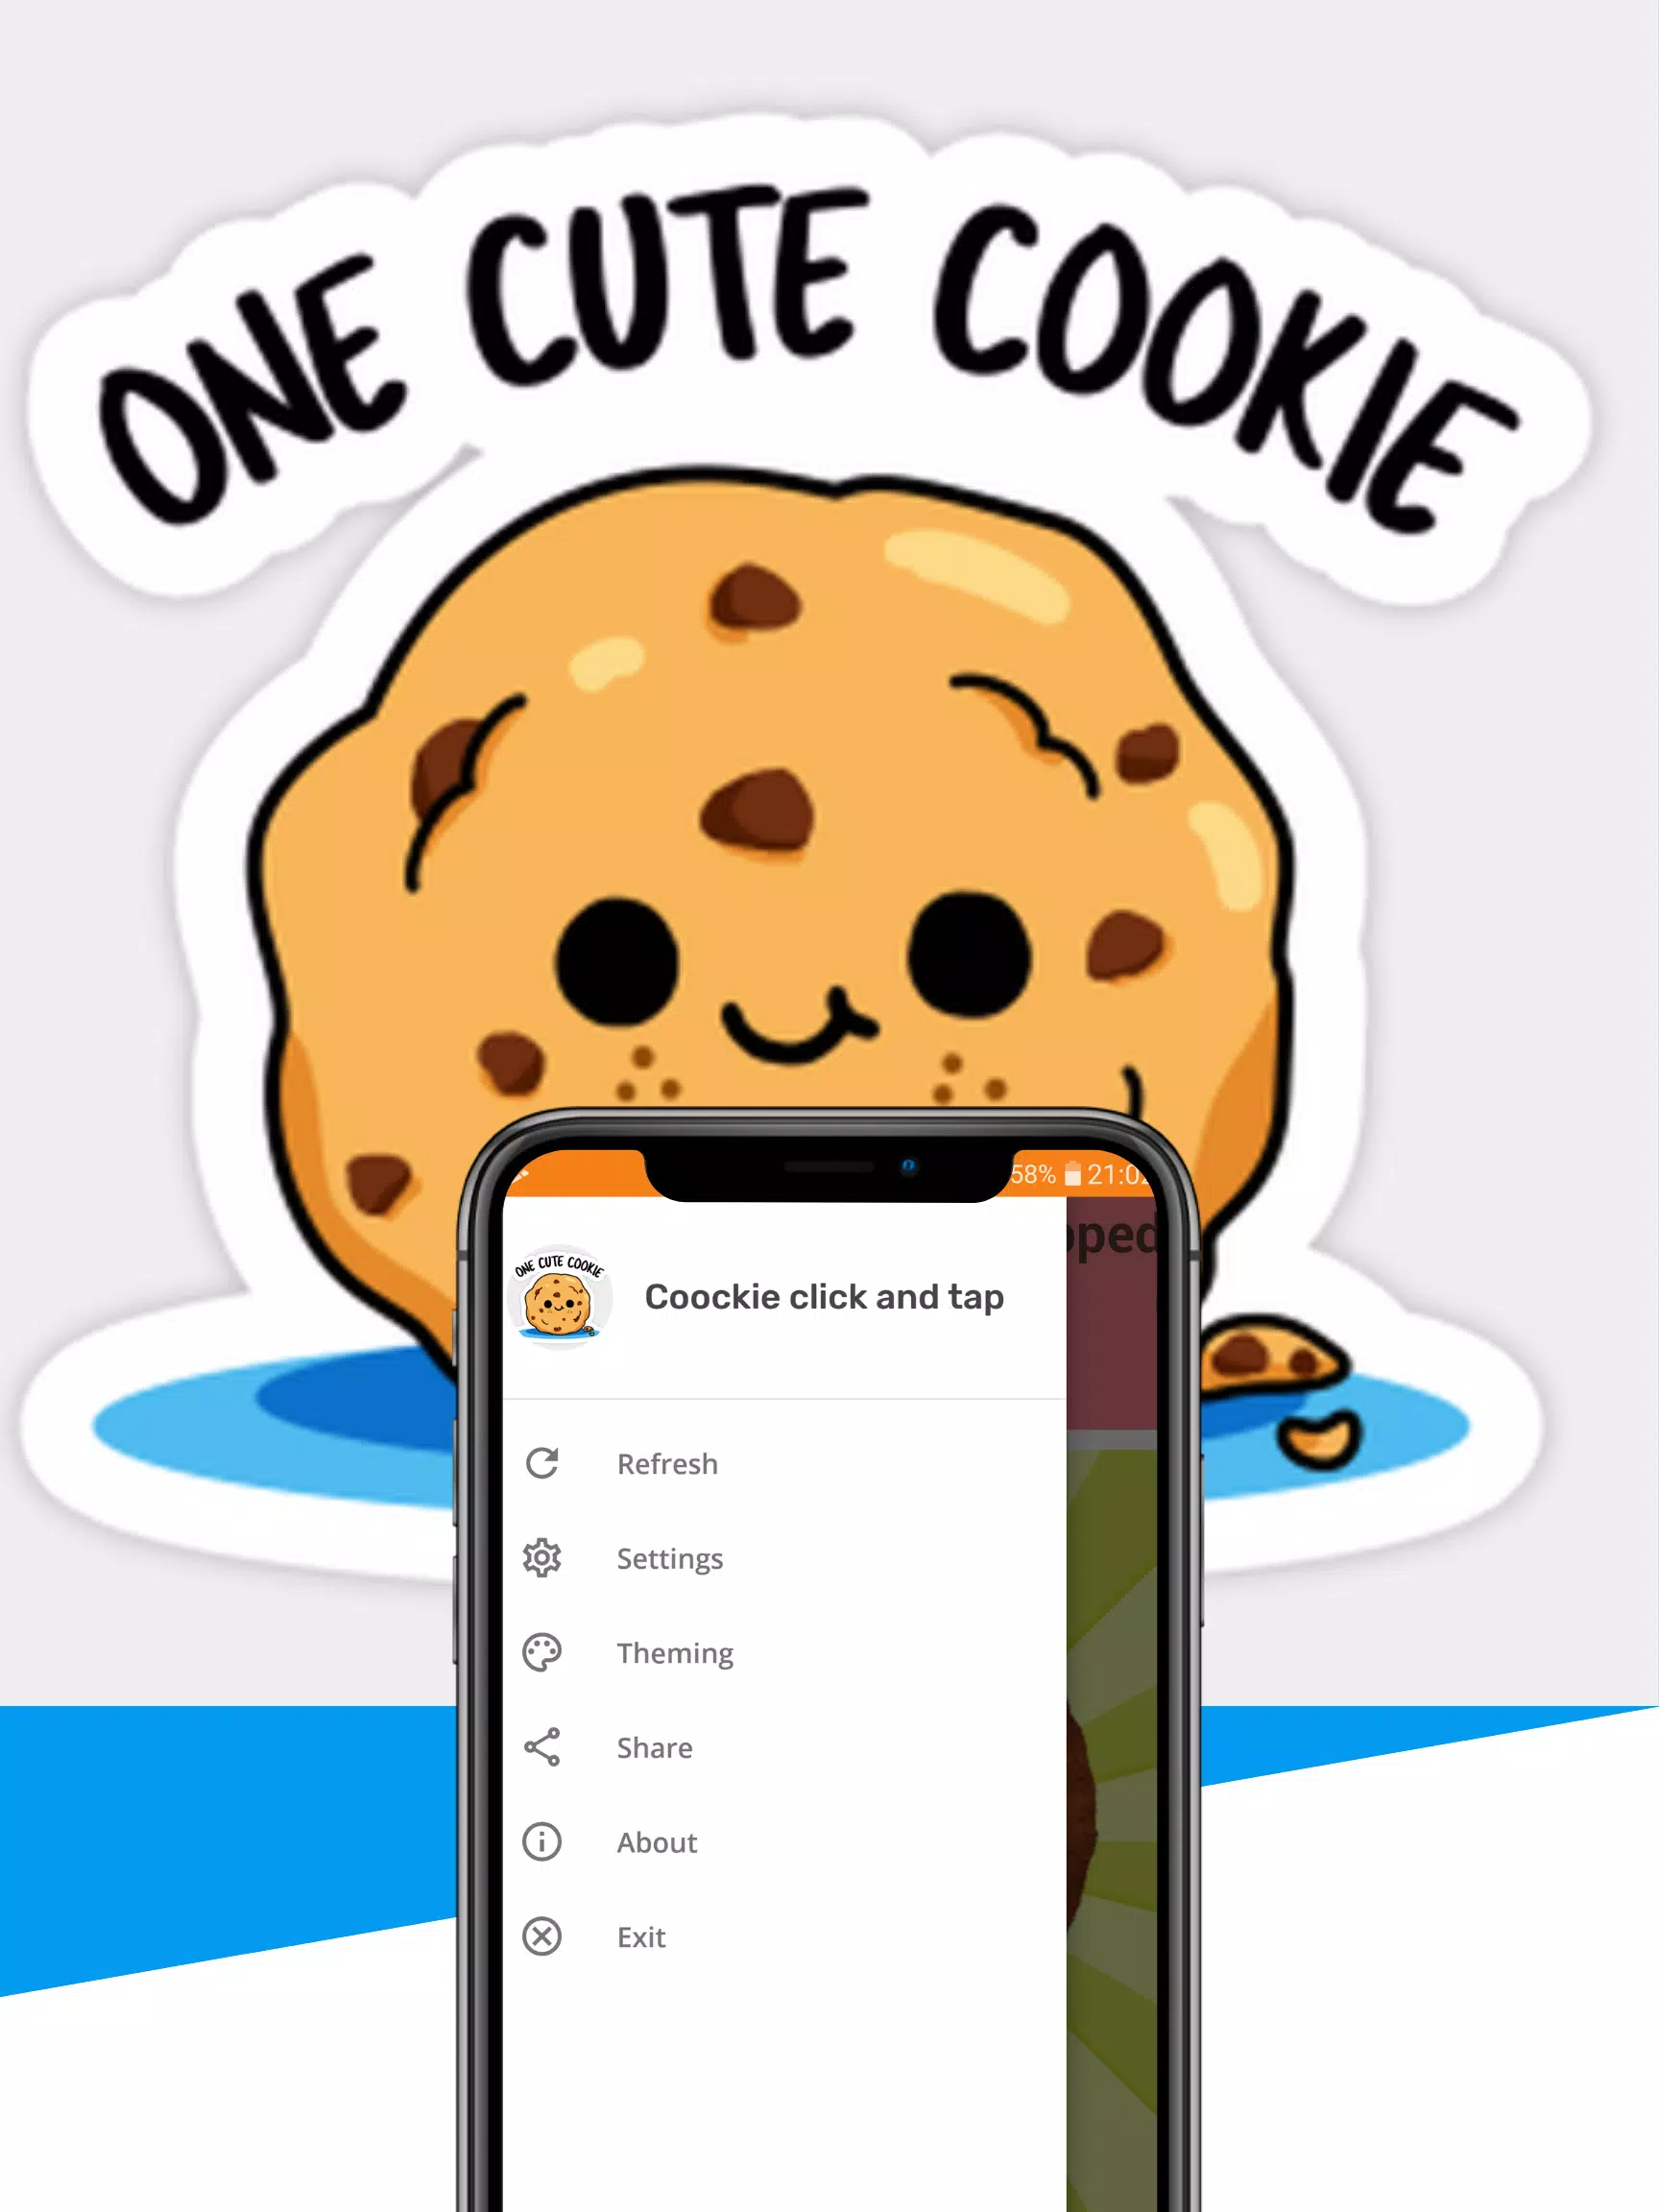 Cute Cookie: Ai có thể cưỡng lại những chiếc bánh quy dễ thương này? Chúng đẹp mắt và ngon miệng, hứa hẹn sẽ làm hài lòng bạn ngay từ cái nhìn đầu tiên. Hãy đến và xem hình ảnh về những chiếc Cute Cookie để choáng ngợp trước sự đáng yêu này!